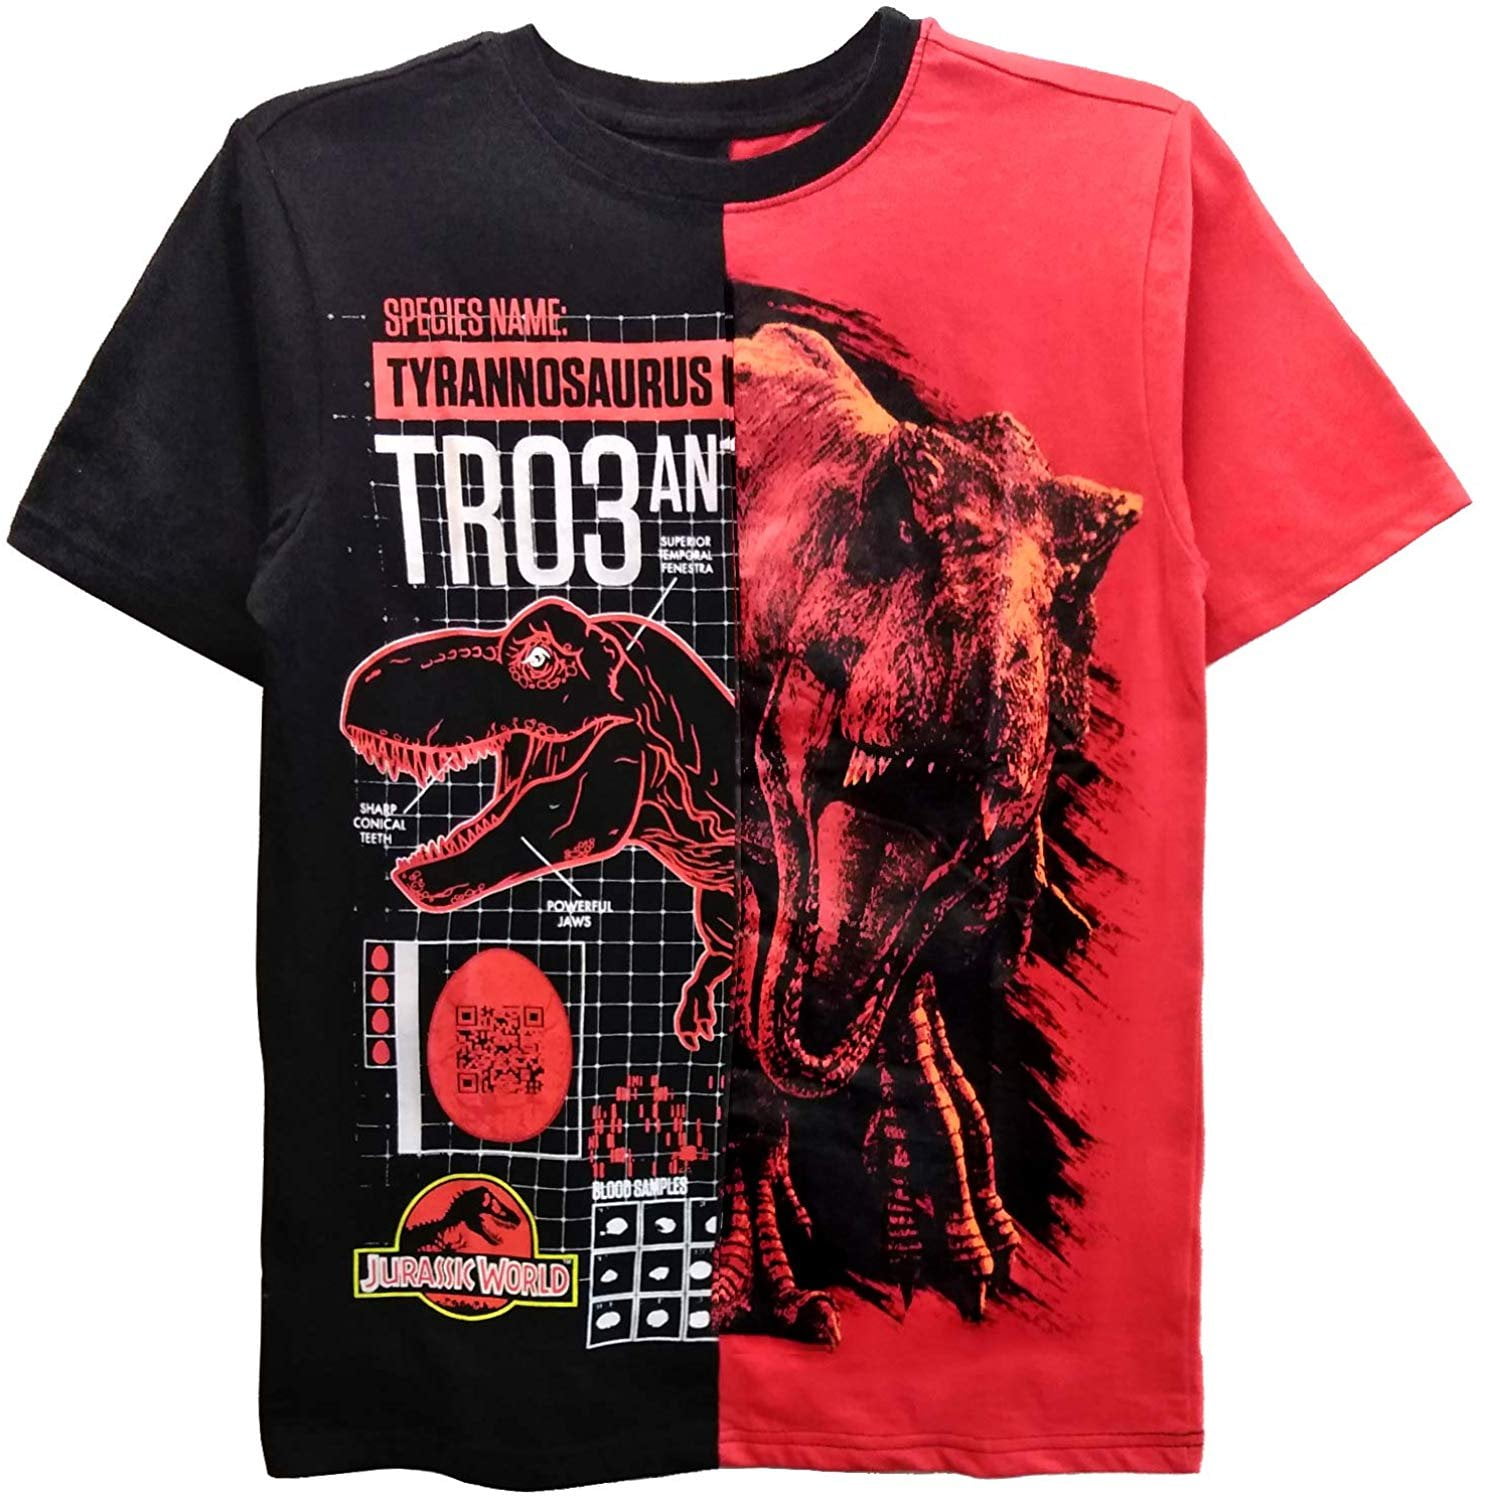 Jurassic World Jungen T-Shirt